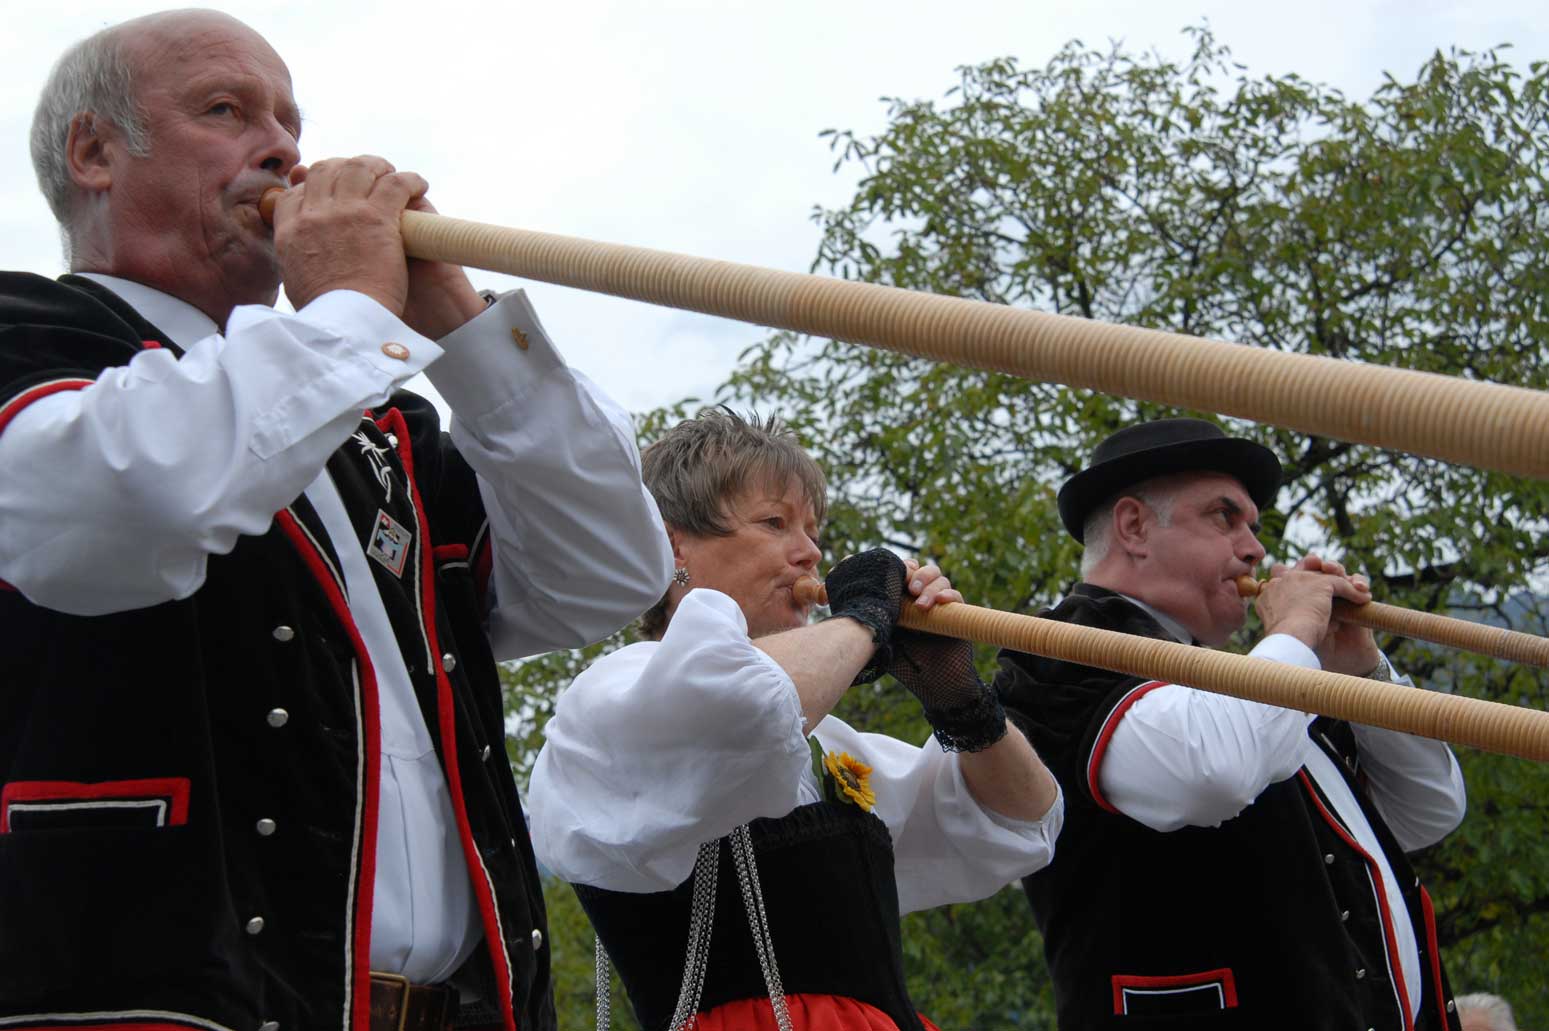 Joueurs de cor des Alpes à la fête d’Unspunnen en 2006 © Steiner/Verein Schweizerisches Trachten- und Alphirtenfest Unspunnen